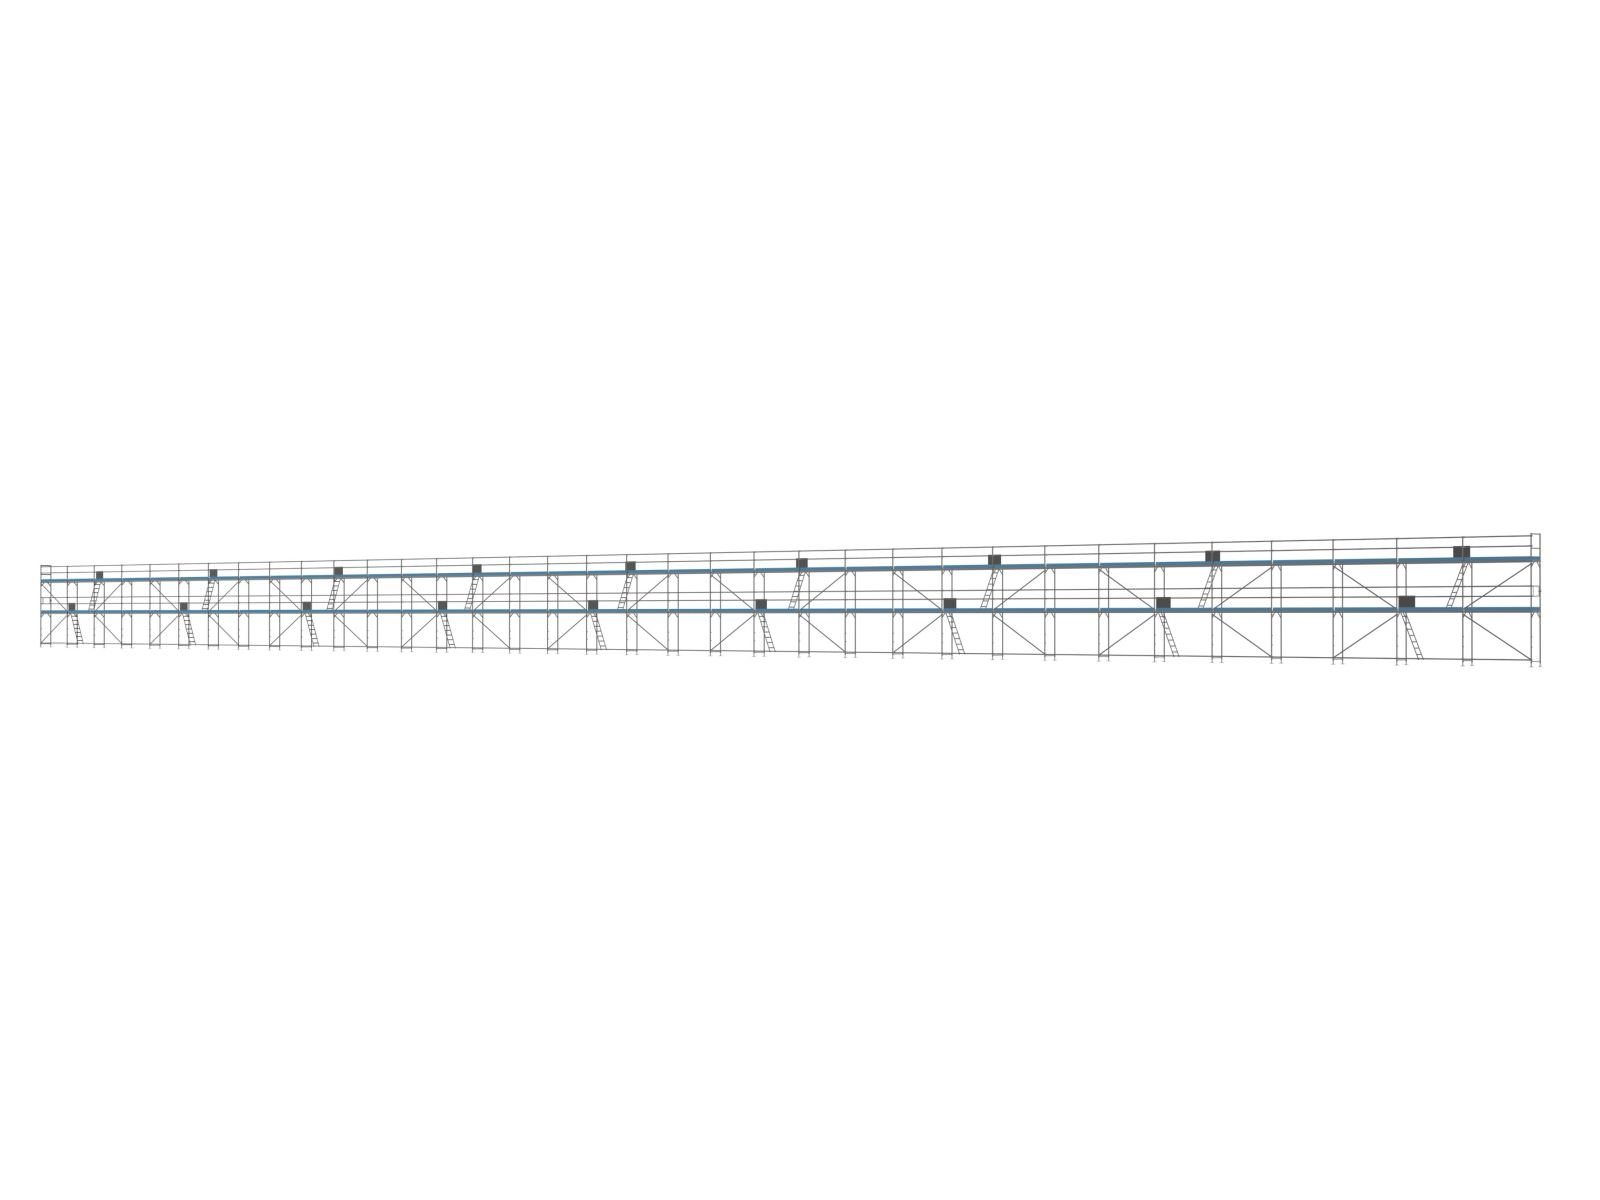 Stahl Traufseitengerüst 720 qm - 3,0 m Felder - 120 m lang - 6 m Arbeitshöhe - Komplettpaket